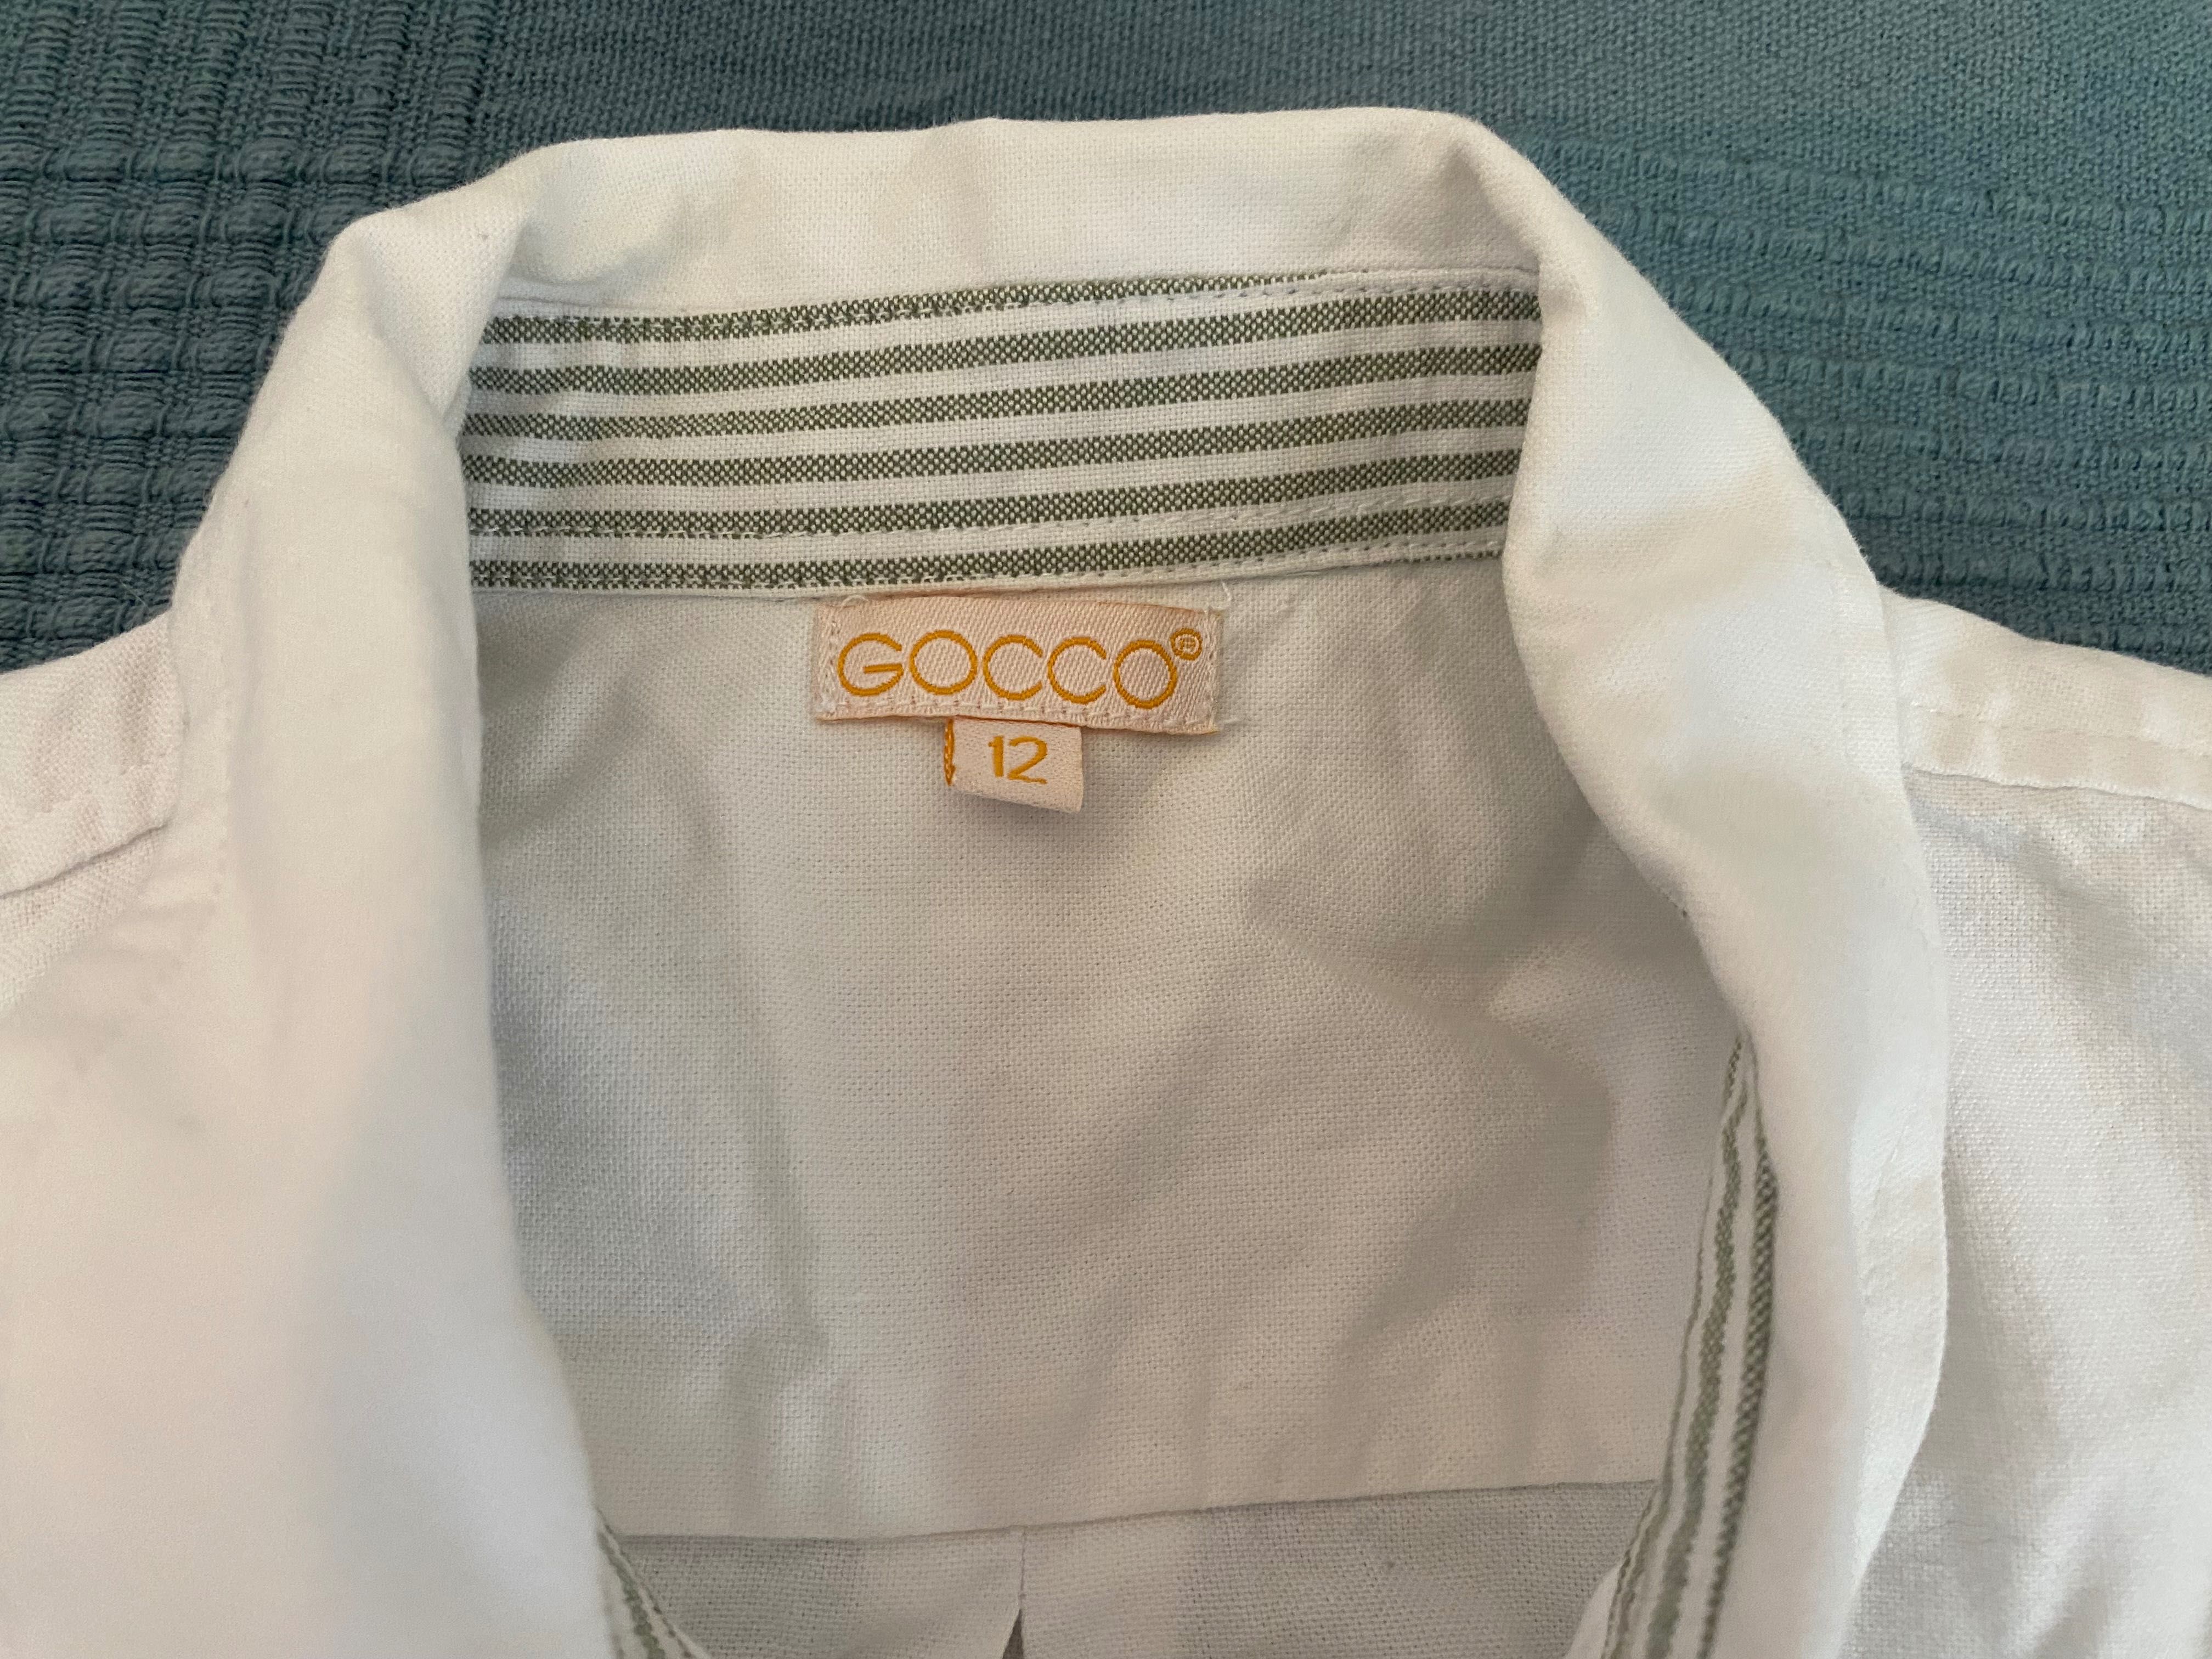 camisa branca Gocco 12 anos, 100% algodão, muito boa apesar de usada